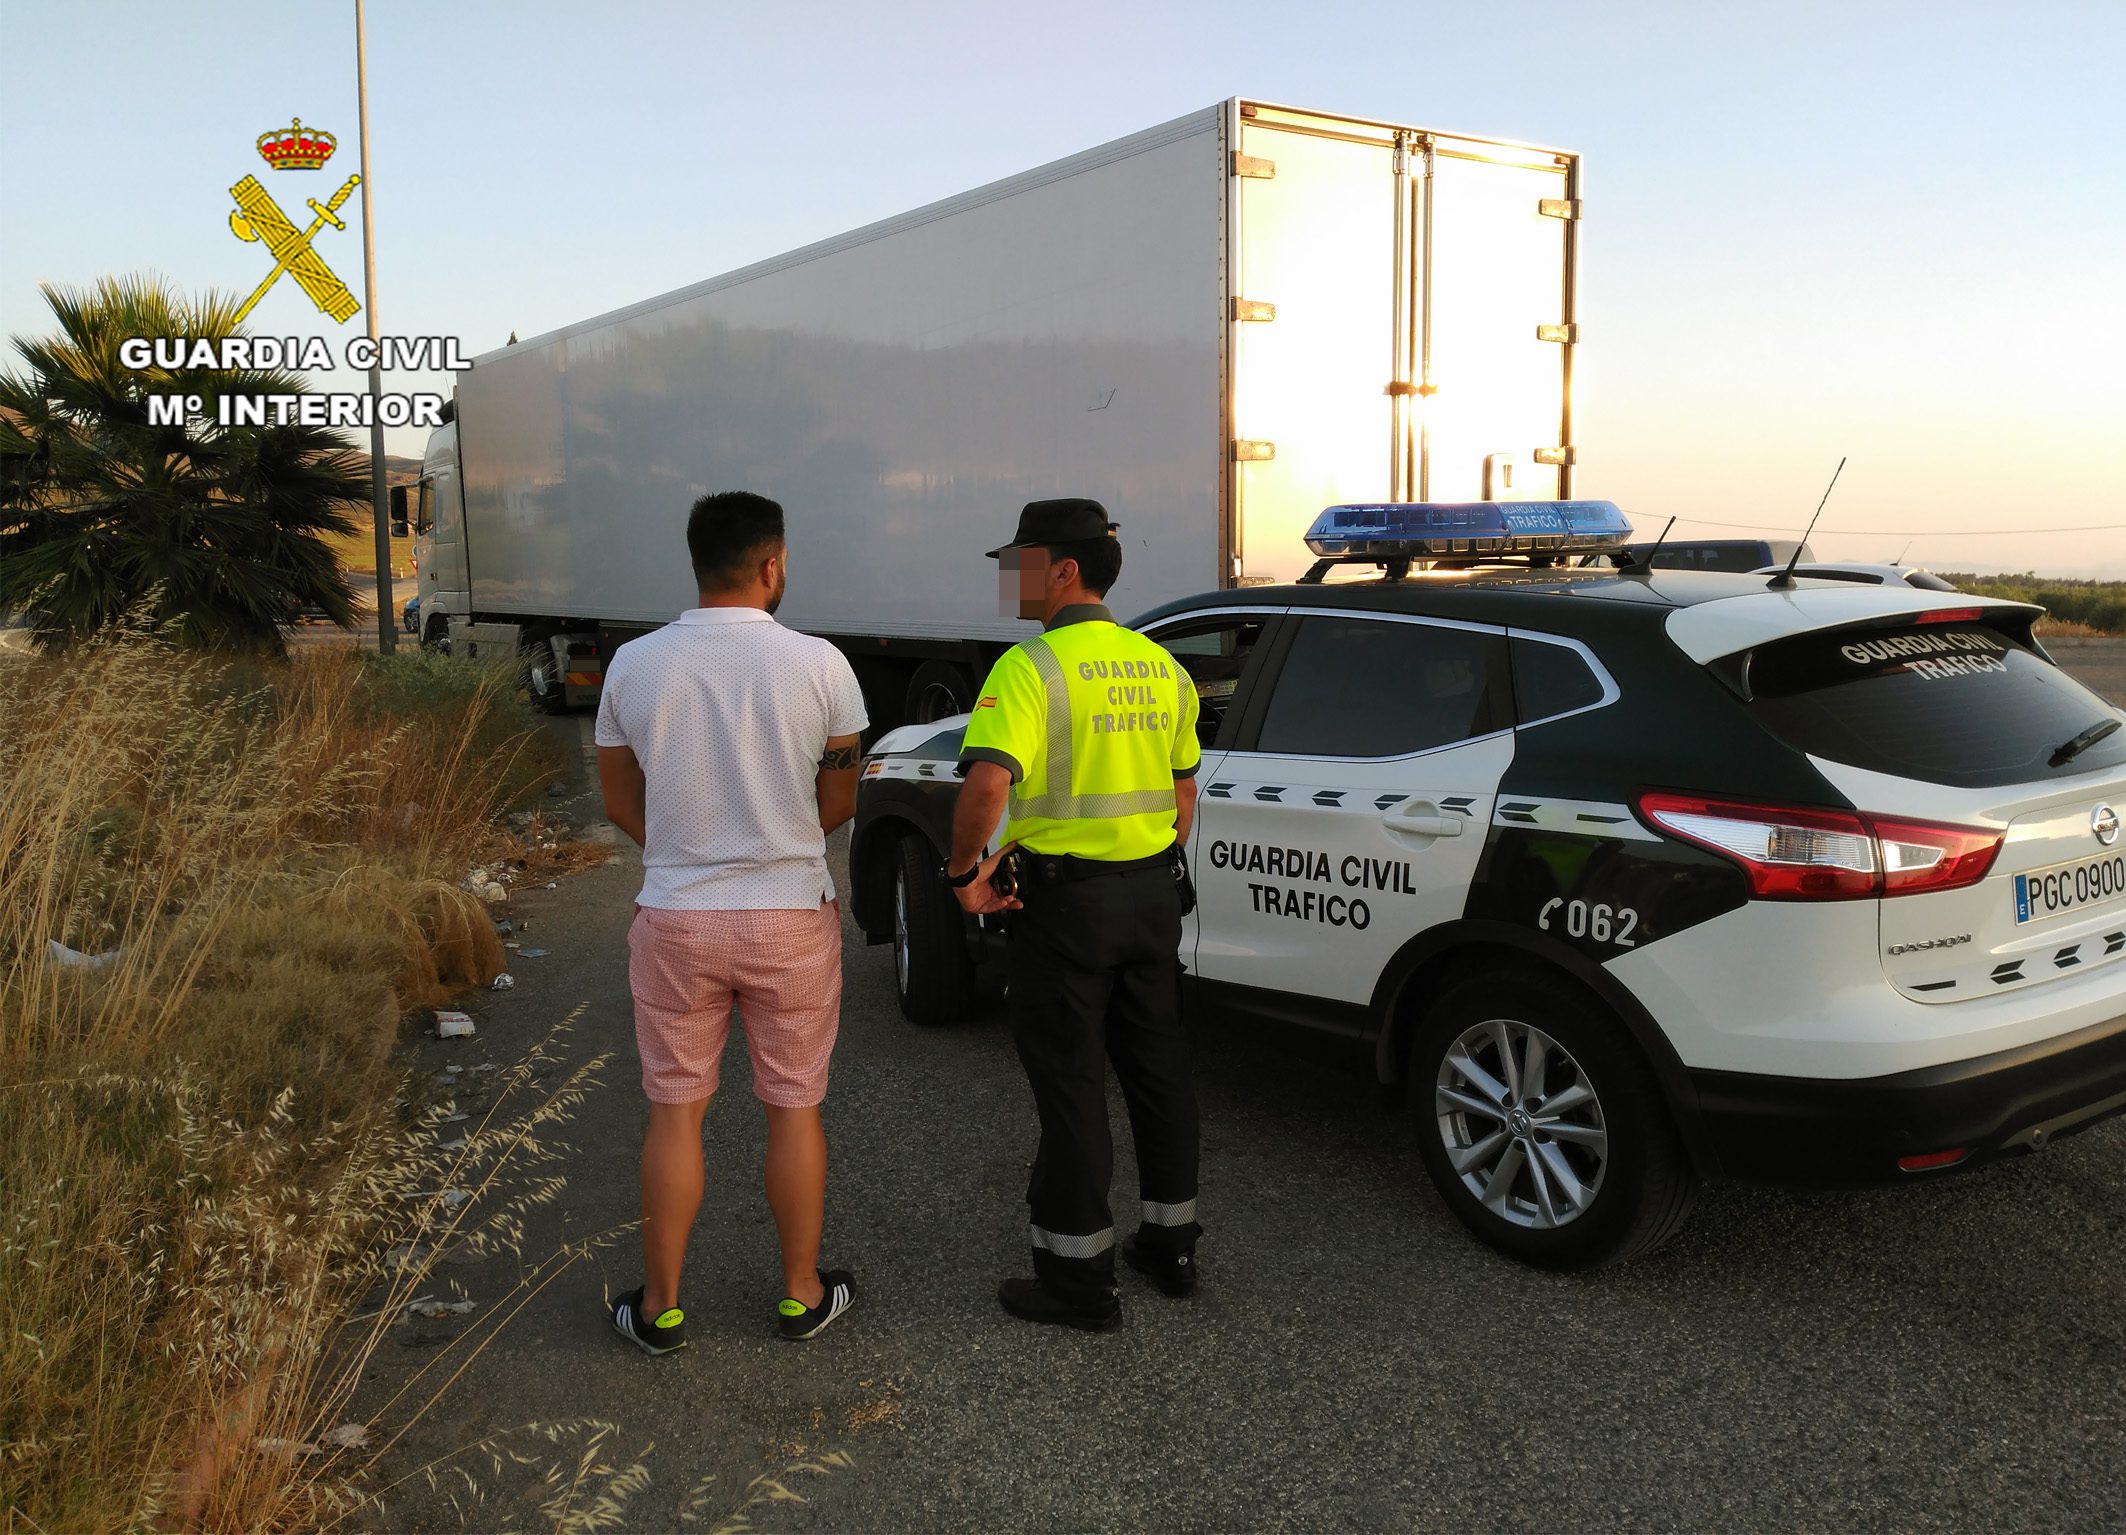 La Guardia Civil intercepta dos vehículos pesados, uno en Jumilla y otro en Mazarrón, cuyos conductores conducían bajo los efectos de sustancias estupefacientes